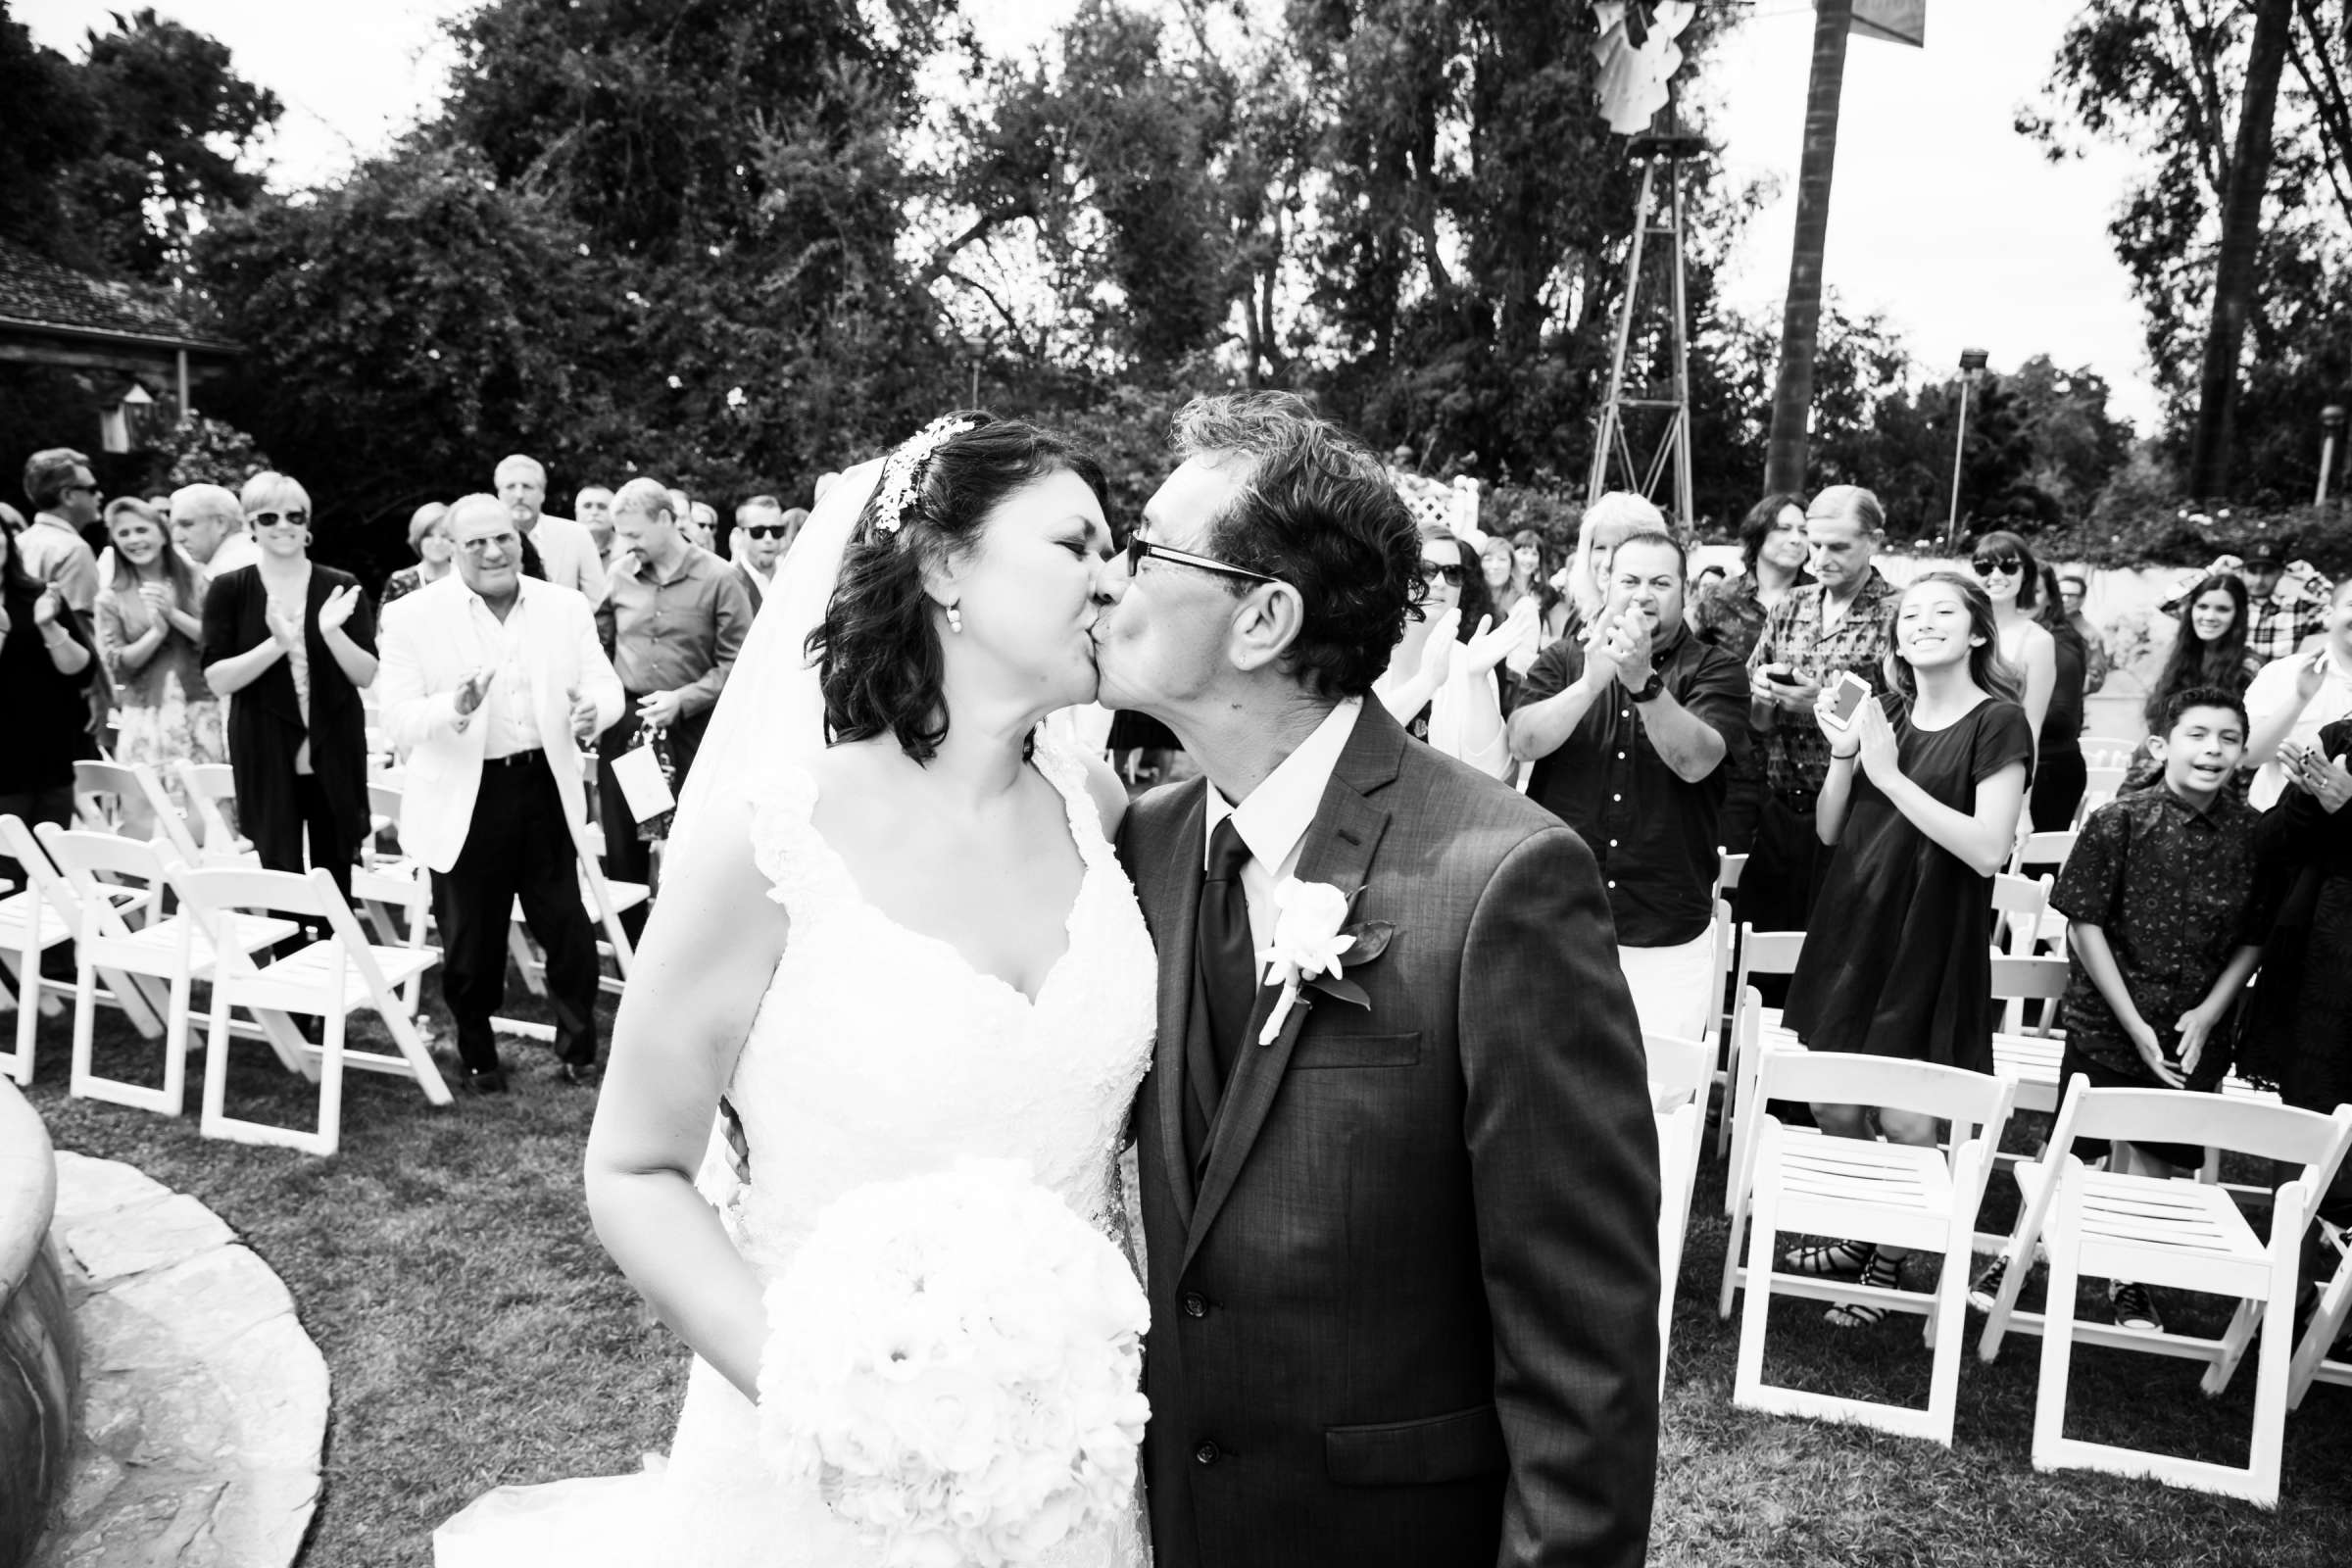 Rancho Buena Vista Adobe Wedding, Ellinor and Frank Wedding Photo #30 by True Photography